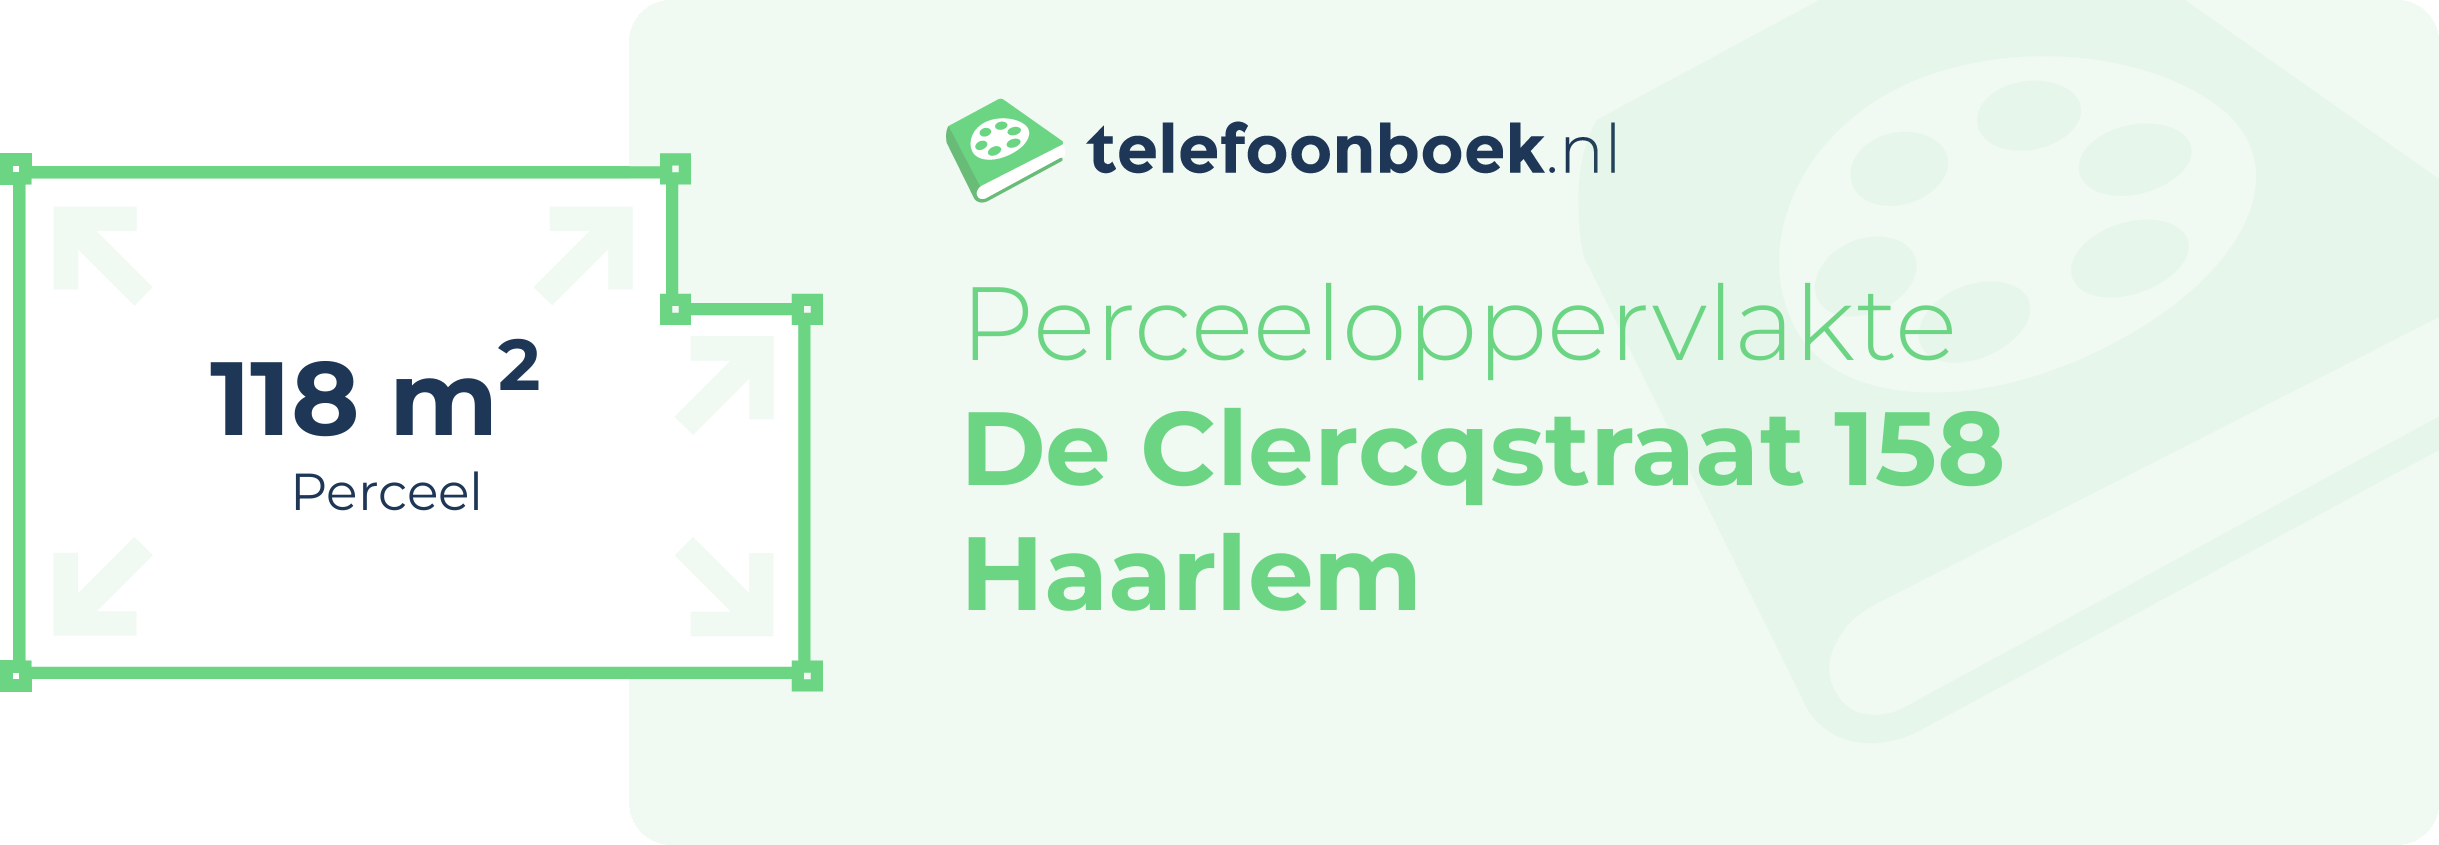 Perceeloppervlakte De Clercqstraat 158 Haarlem